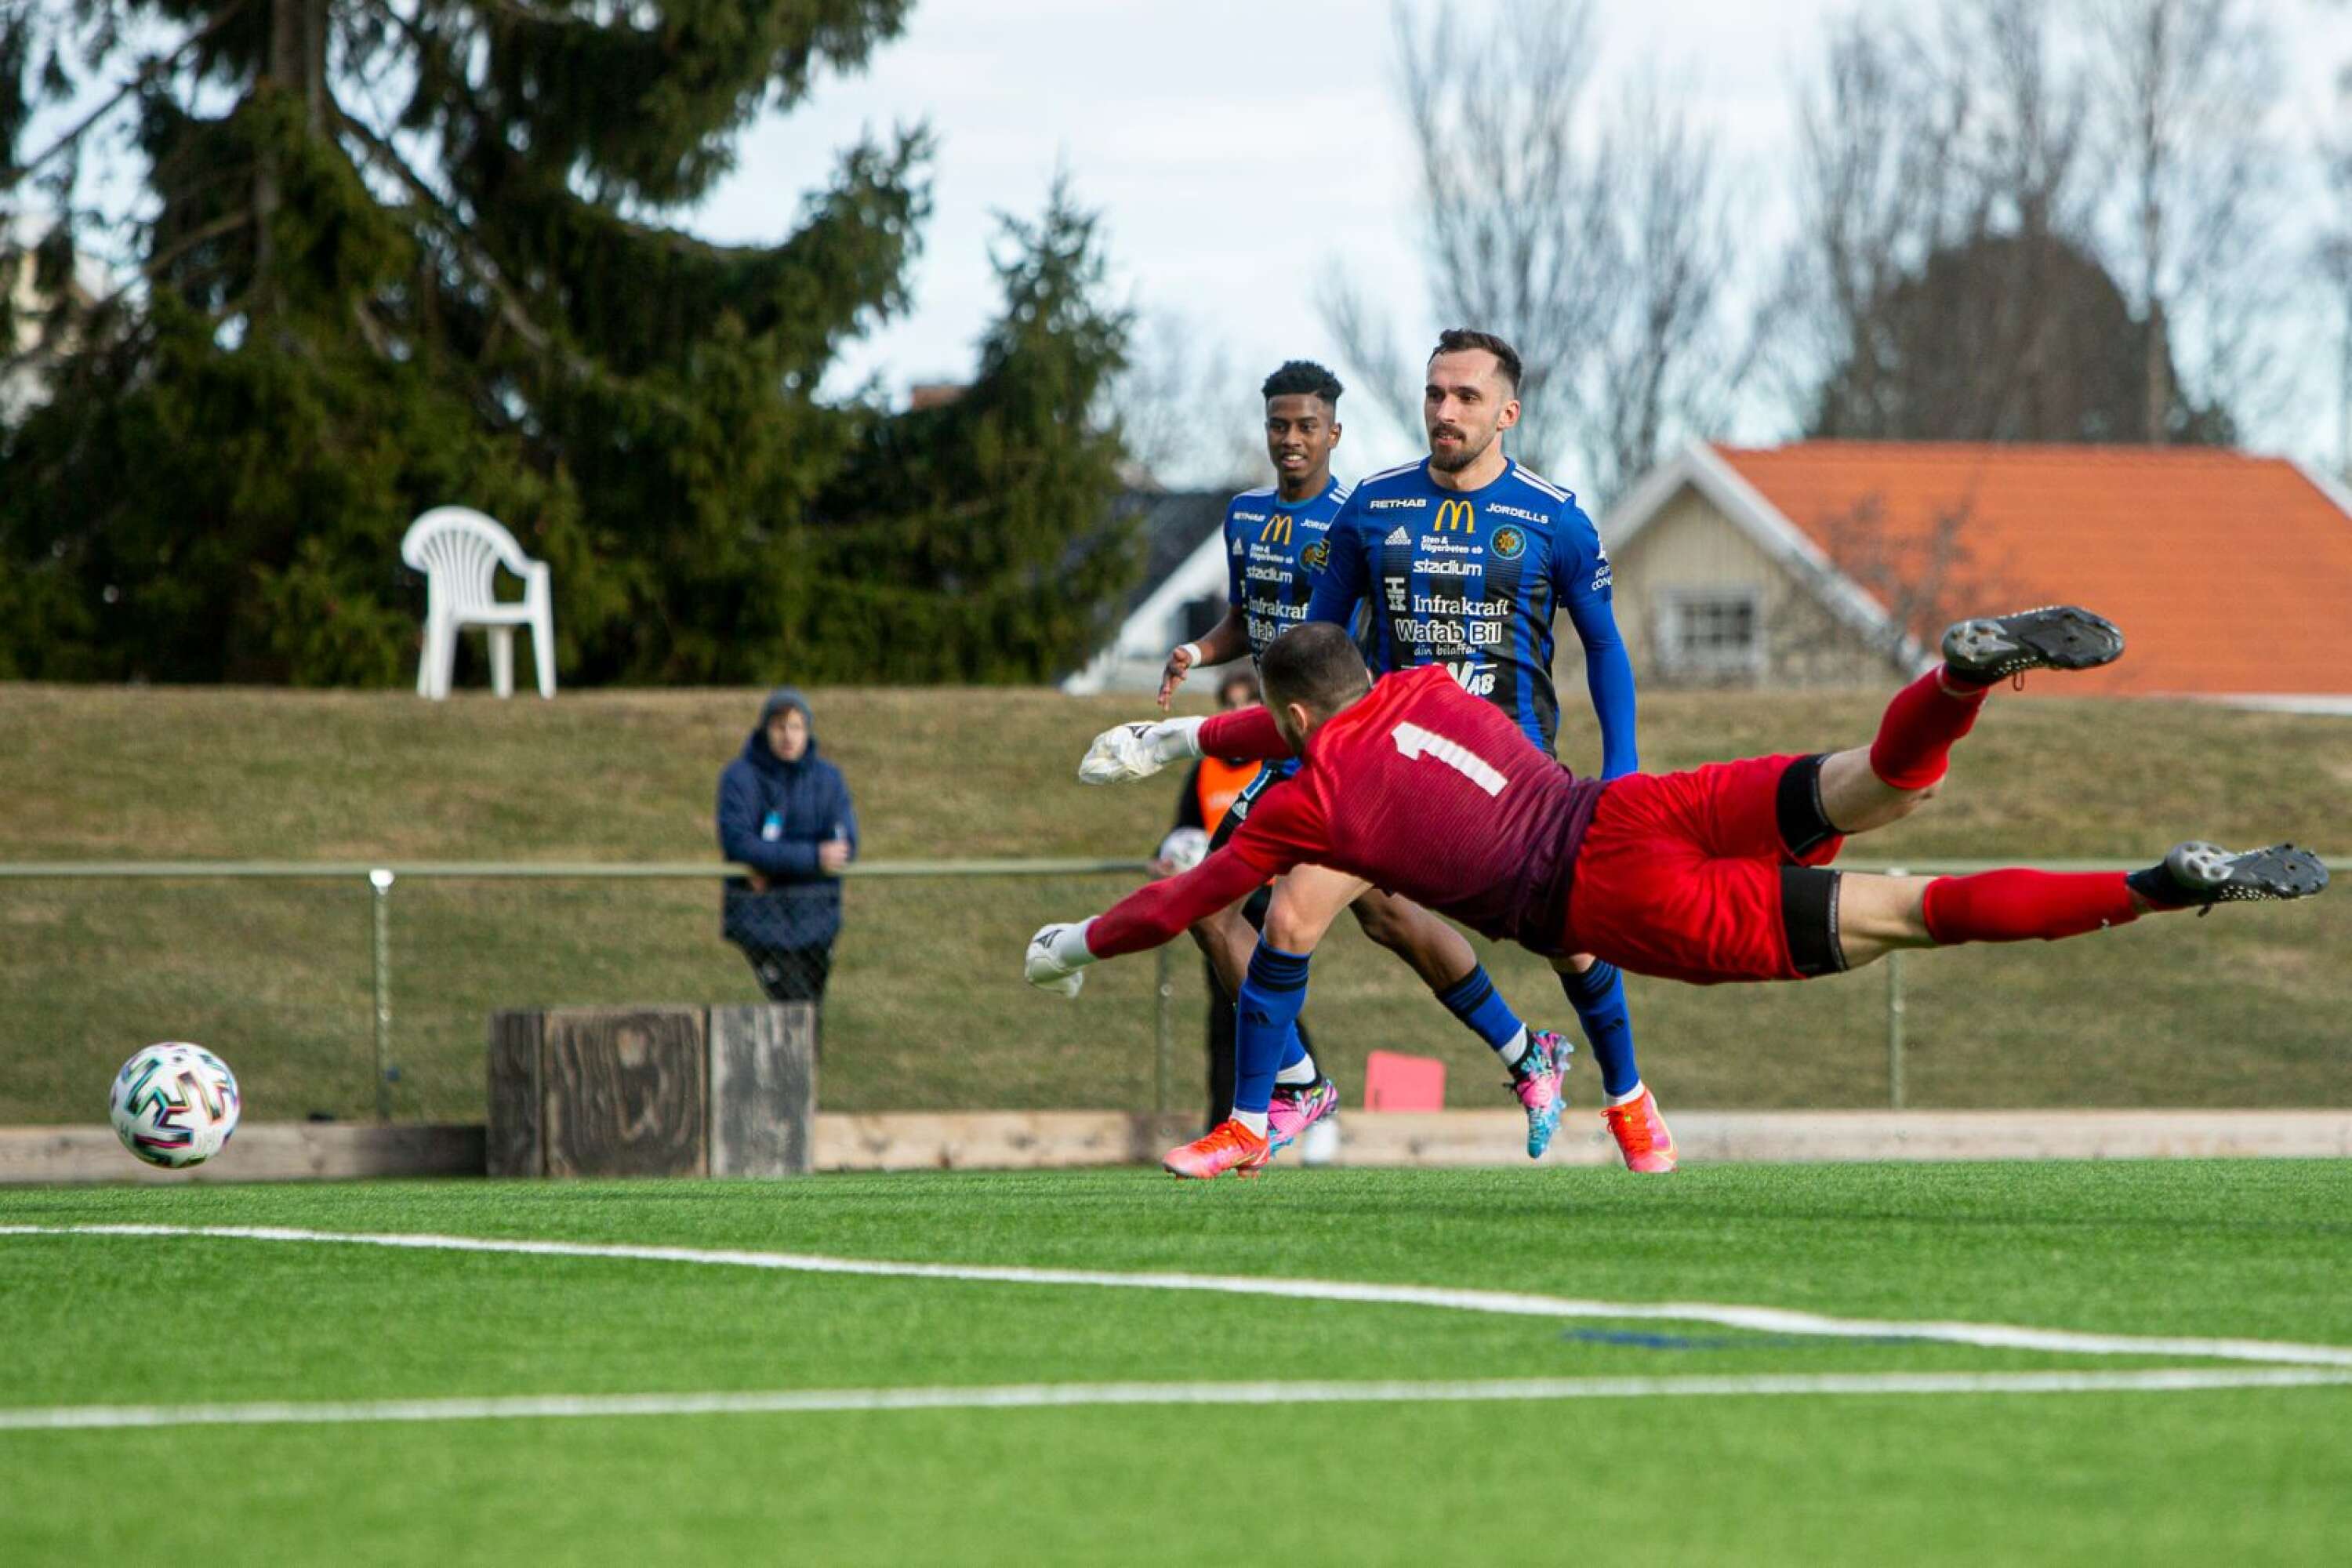 Agon Beqiri slog in 4–0 till Karlstad i öppet mål efter framspelning av Jacob Ericsson.